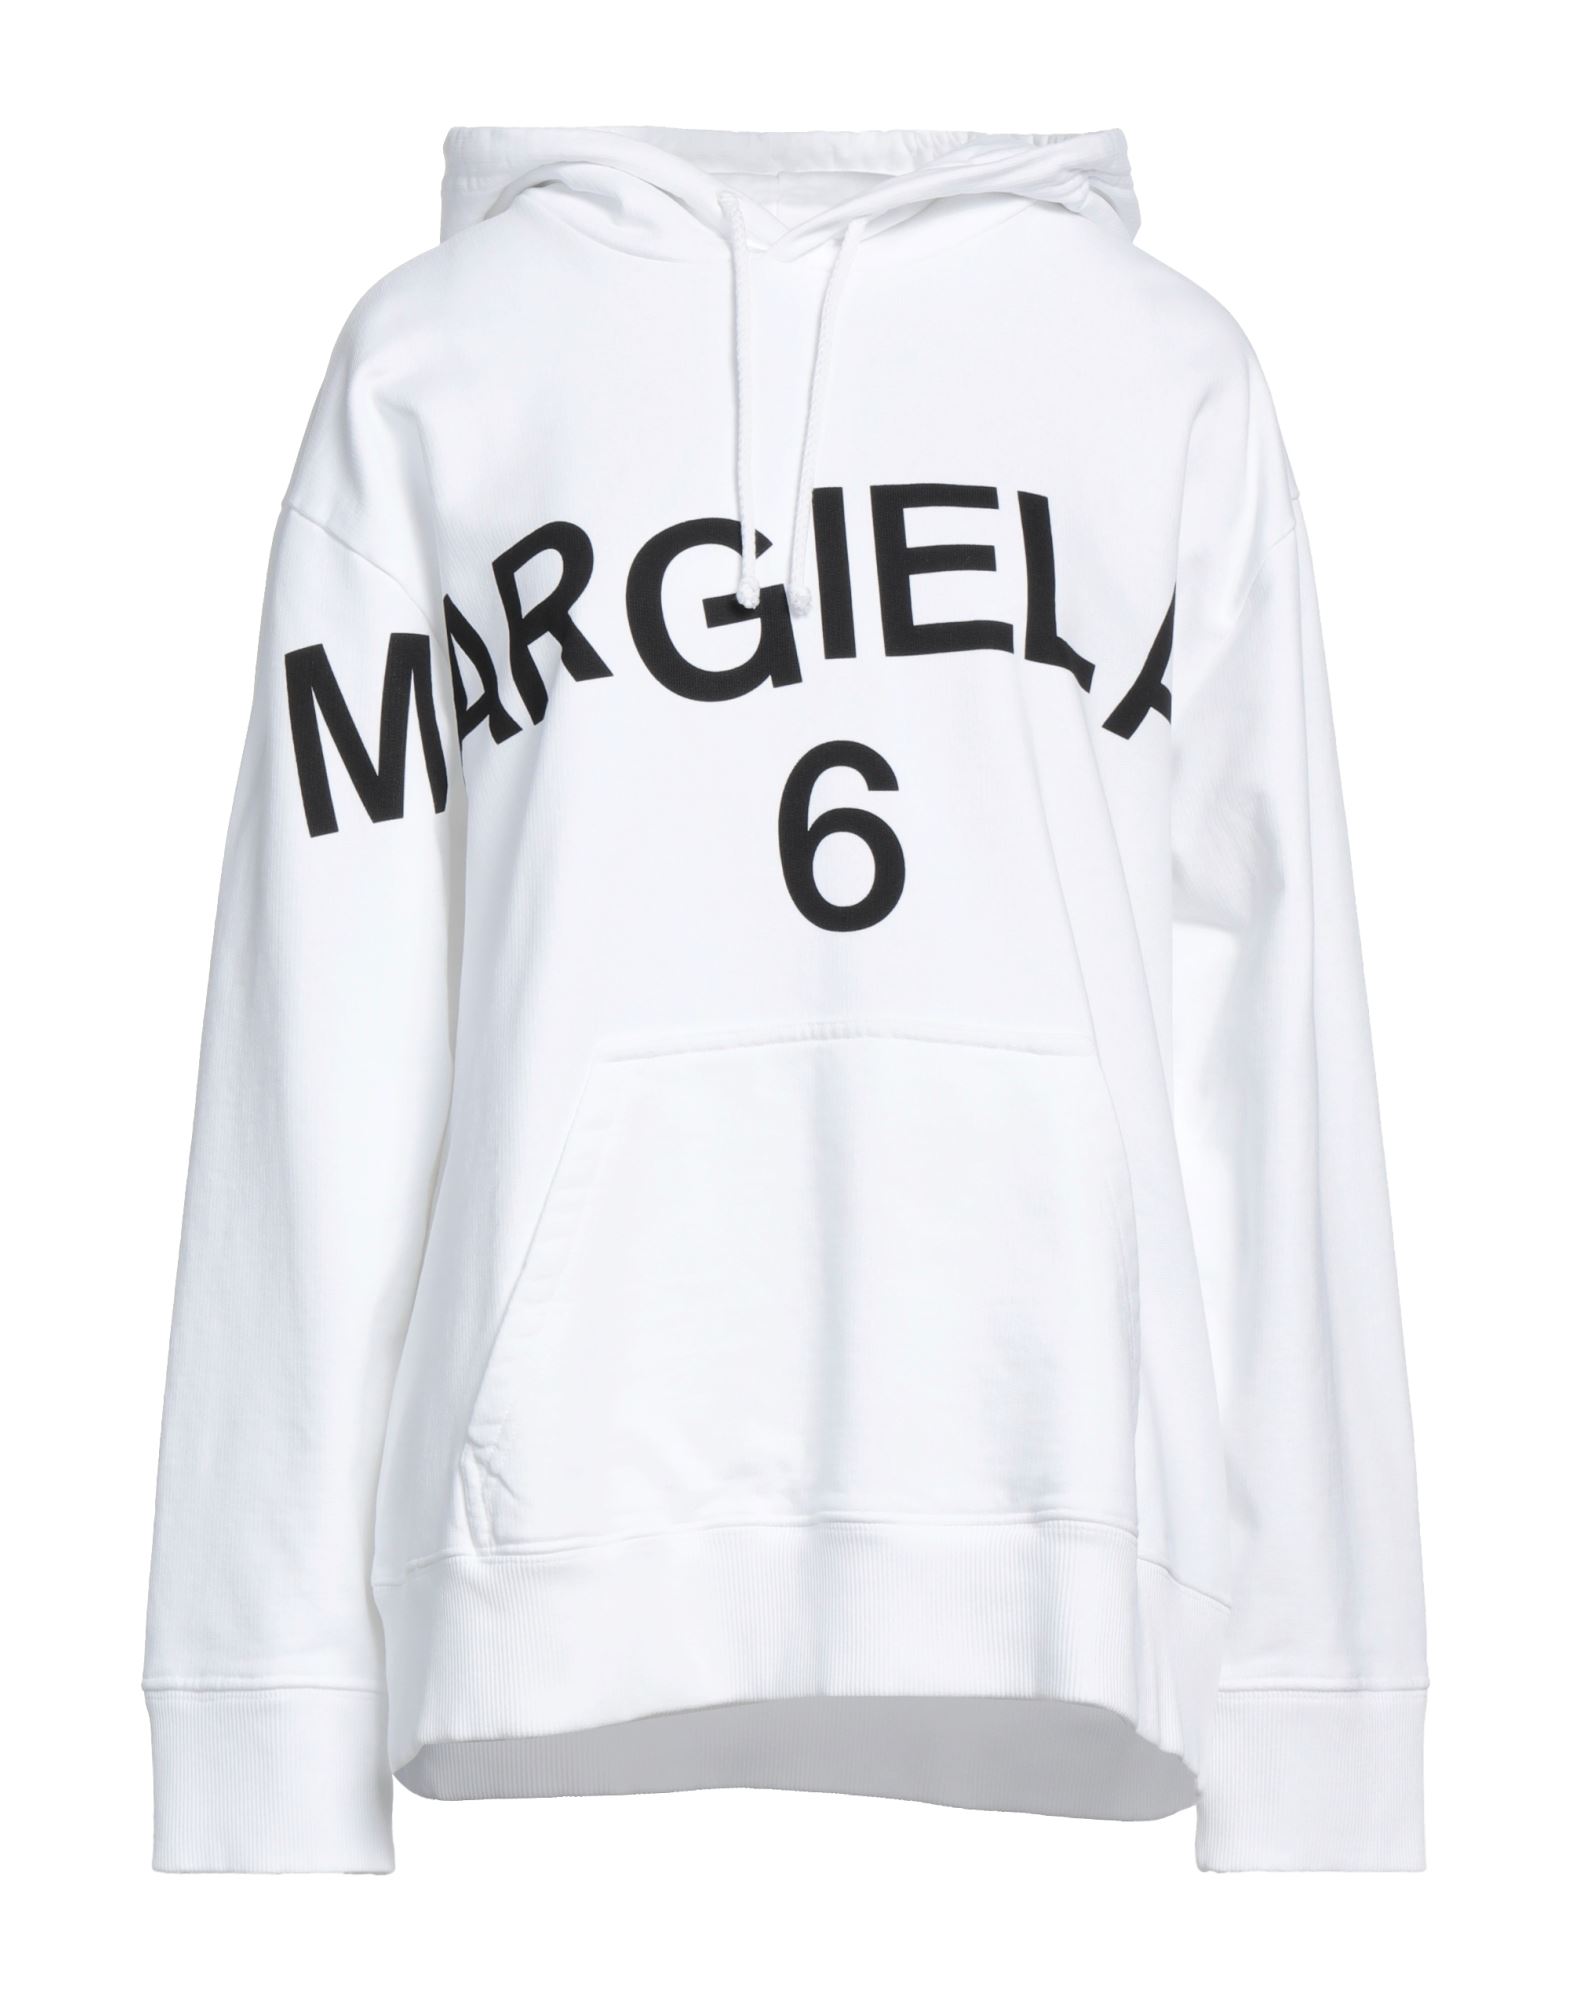 MM6 MAISON MARGIELA Sweatshirt Damen Weiß von MM6 MAISON MARGIELA